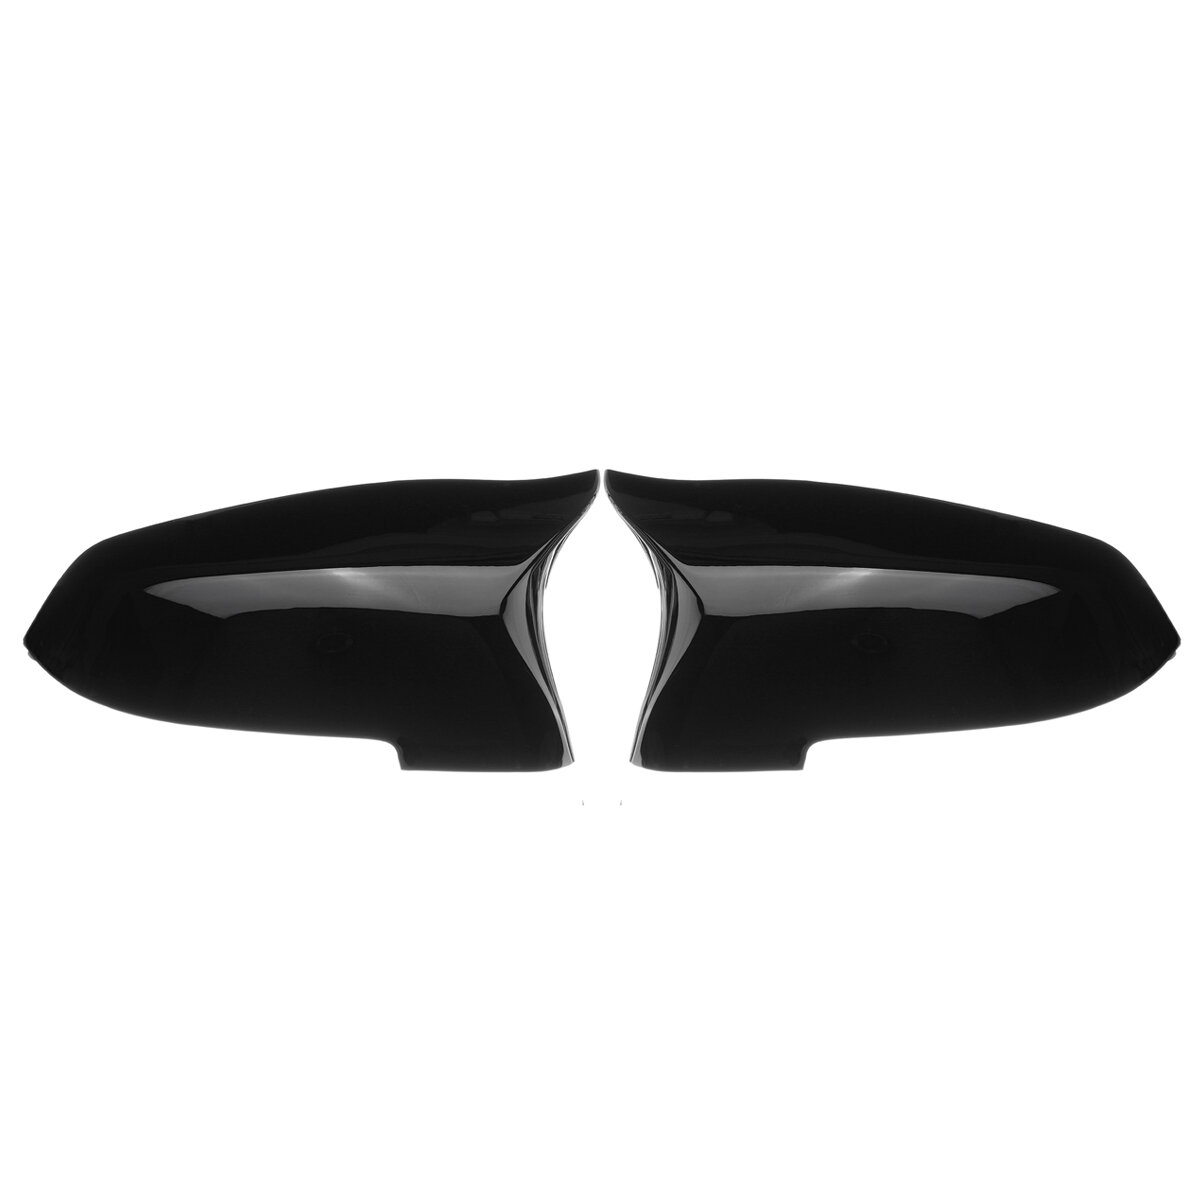 2 stks Gloss Black Side Achteruitkijkspiegel Covers Caps Voor BMW 5 6 7 Serie F10 F18 F11 F06 F07 F1